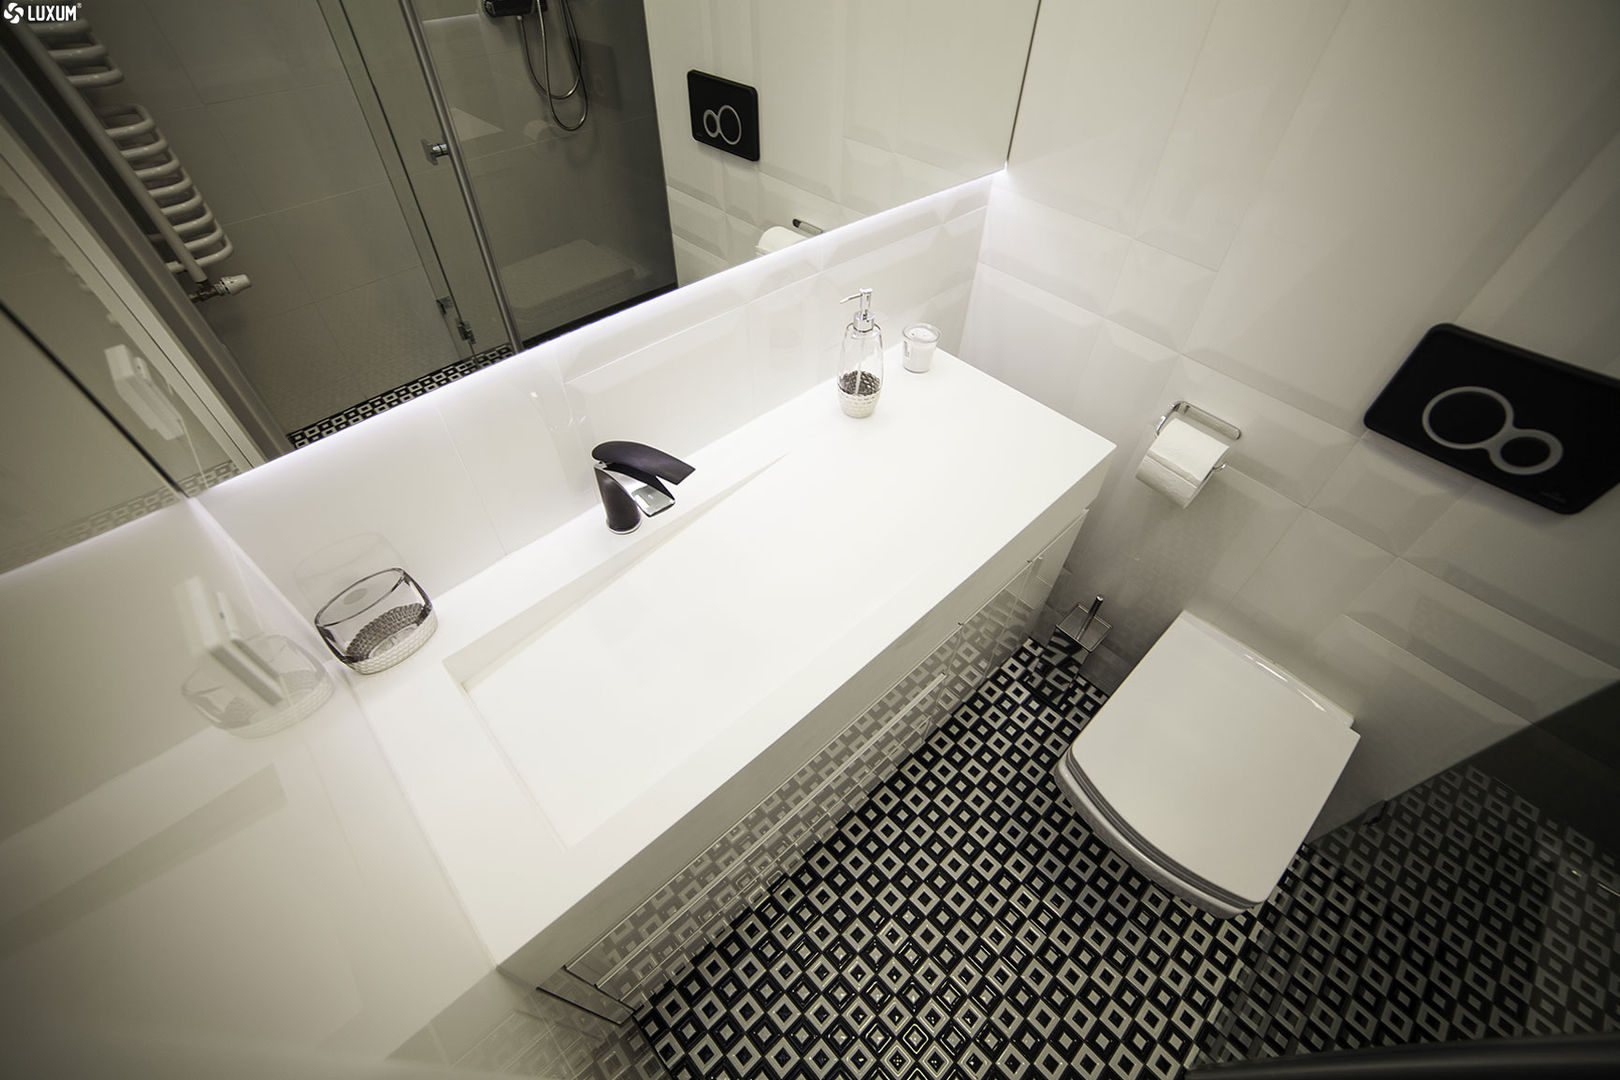 Prostokątna umywalka z odpływem liniowym od Luxum. , Luxum Luxum Scandinavian style bathroom